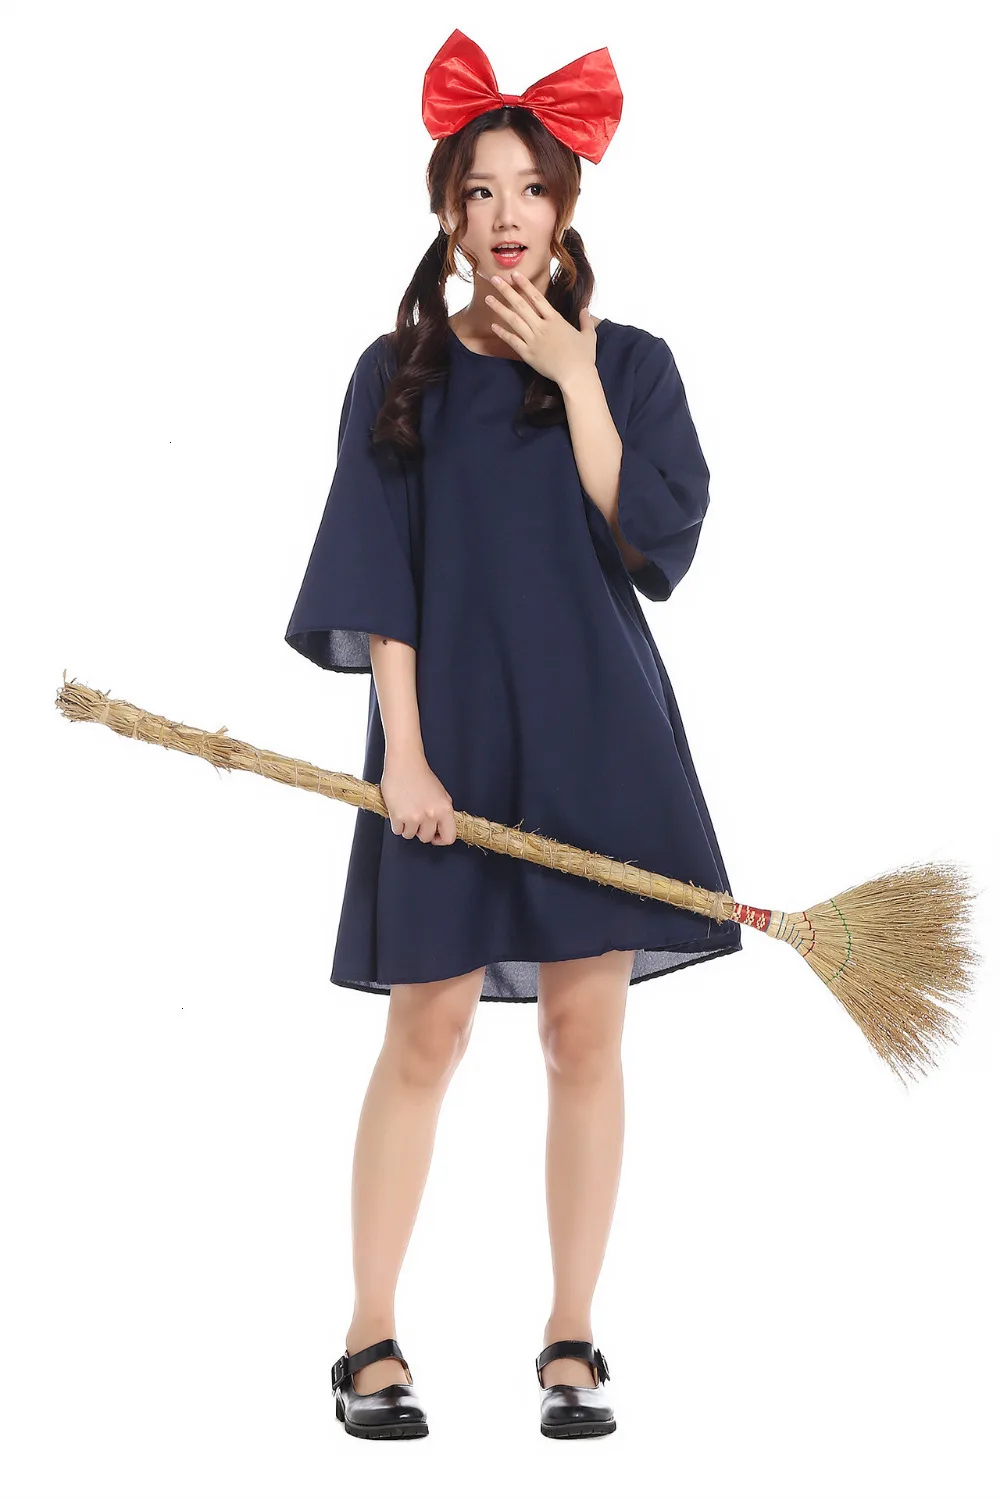 Kiki's Delivery Service Kiki eksportowane do japonii cosplay kostiumy dla dorosłych minimalistyczna japońska czarownica mała czarownica